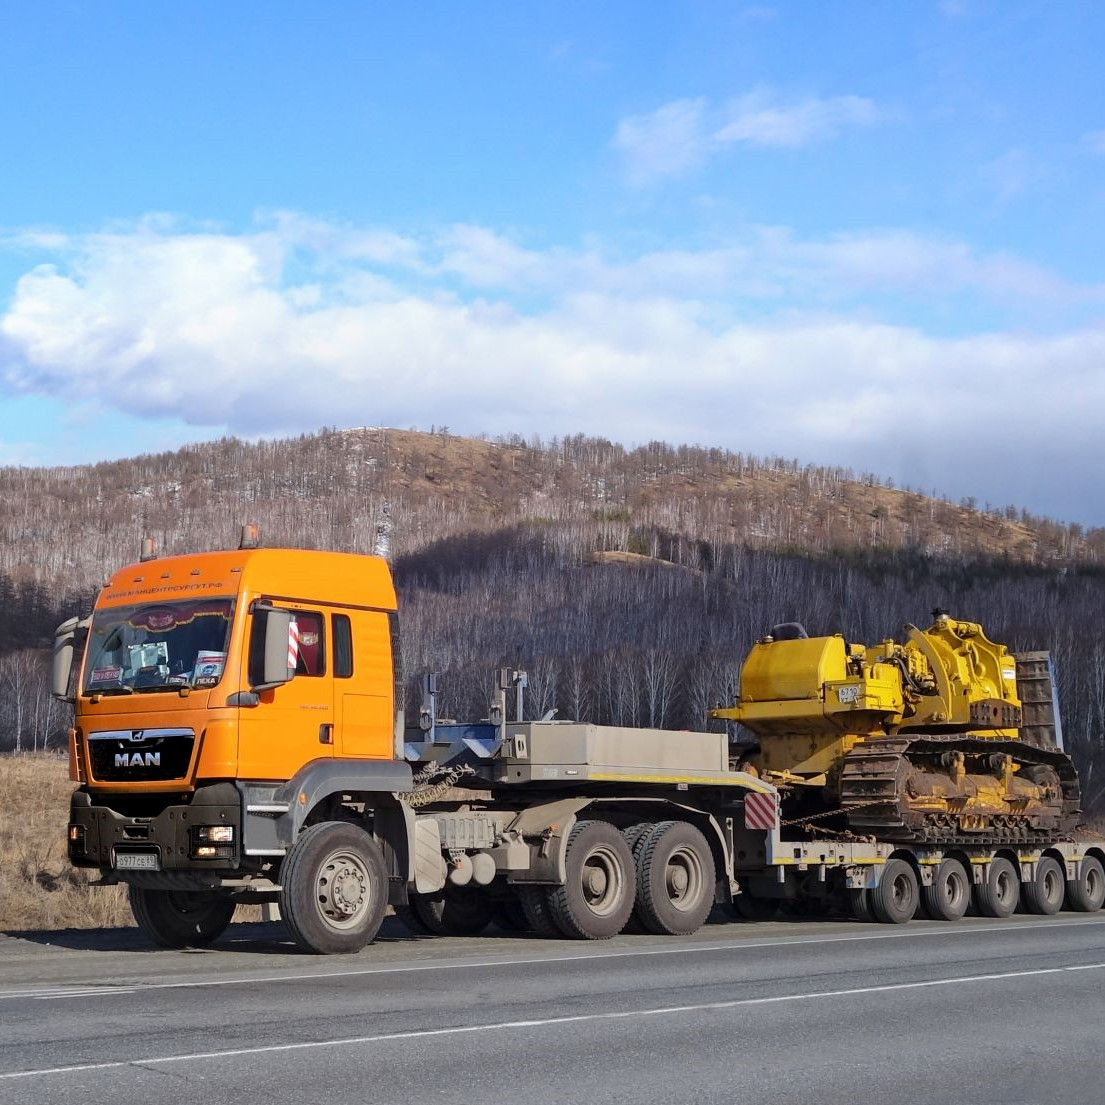 Перевозка негабаритных грузов Эстония - Казахстан